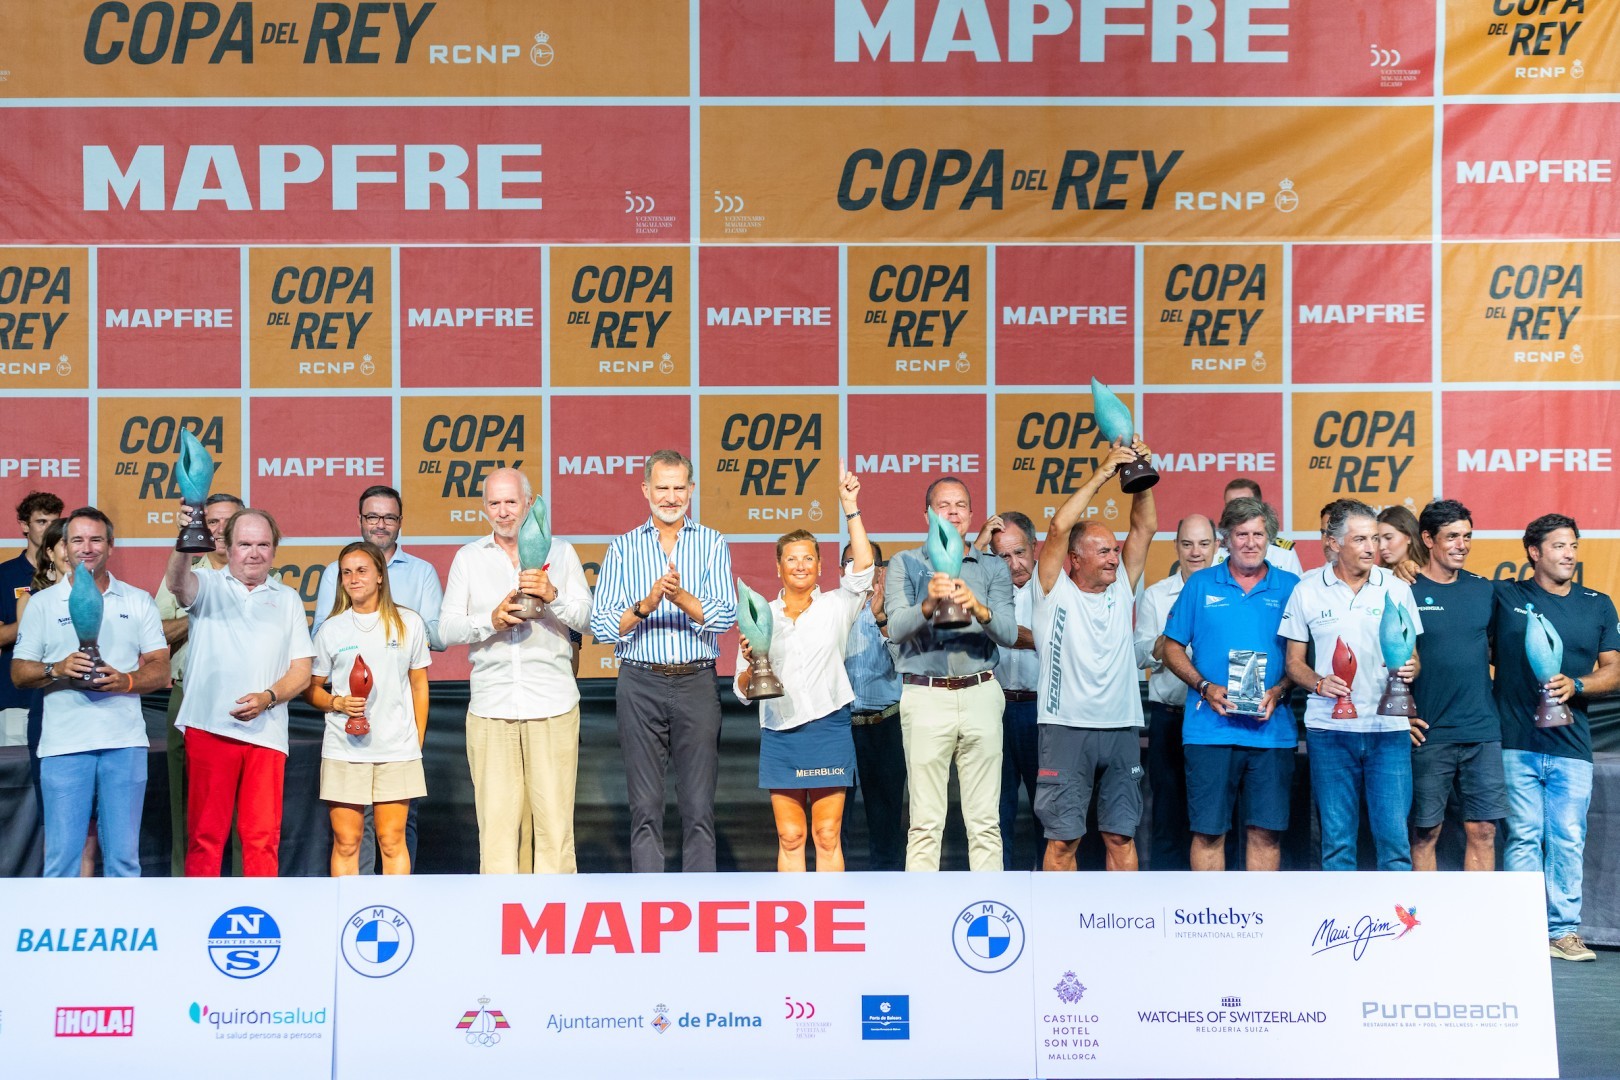 Winners of the Copa del Rey MAPFRE. © María Muiña/Copa del Rey MAPFRE